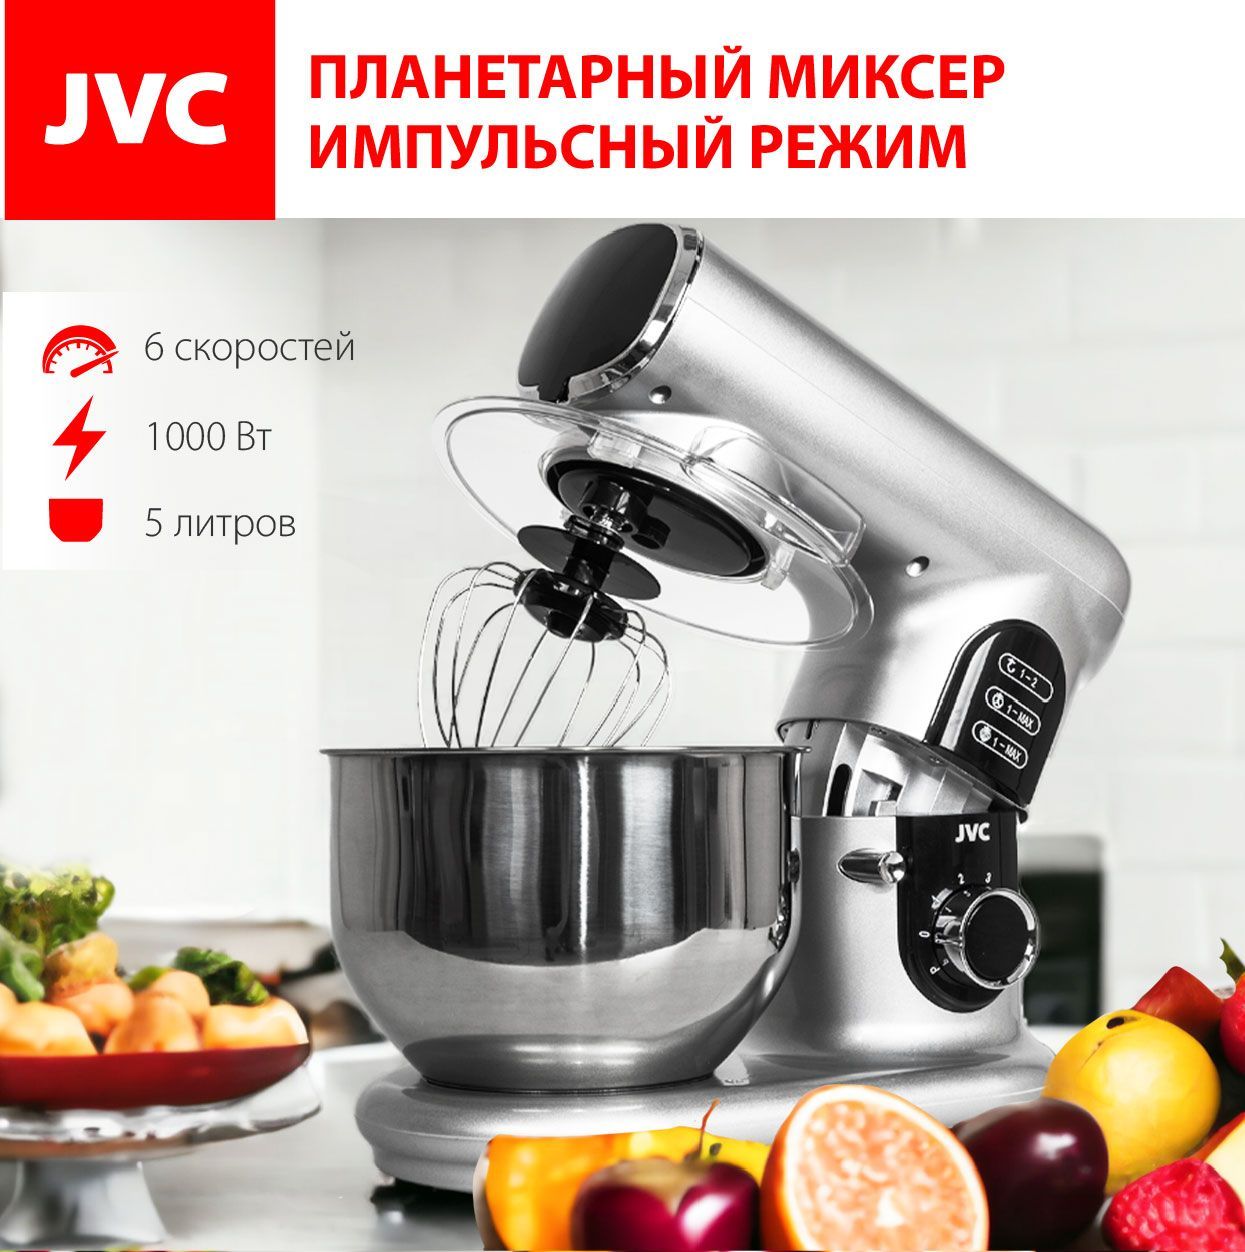 КухоннаямашинаJVCJK-MX515silverсостальнойчашей5литров,6скоростей,импульсныйрежим,3насадки,защитнаякрышка,1000Вт